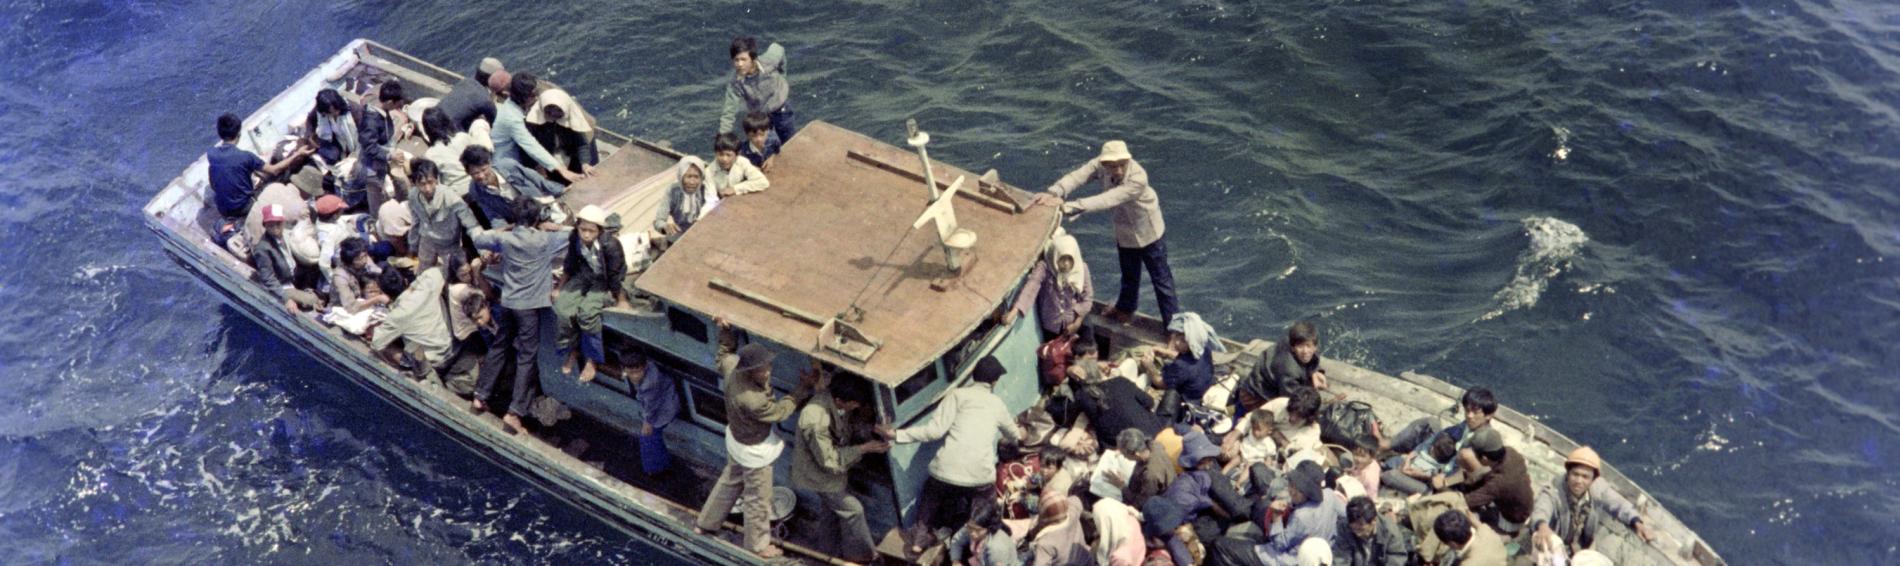 Un bâteau de fortune, rempli à ras bord de réfugiés vietnamiens, sur l'eau.